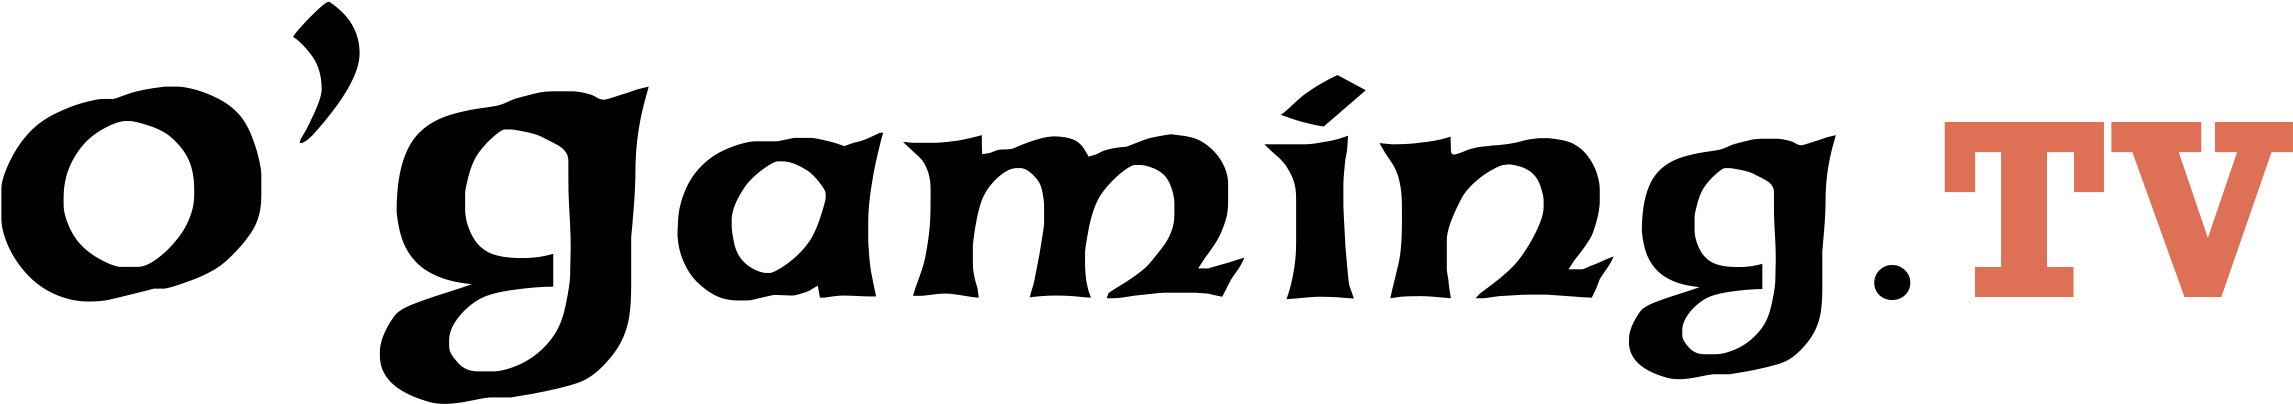 Logo O'gaming - O Gaming Logo Png (2301x498), Png Download